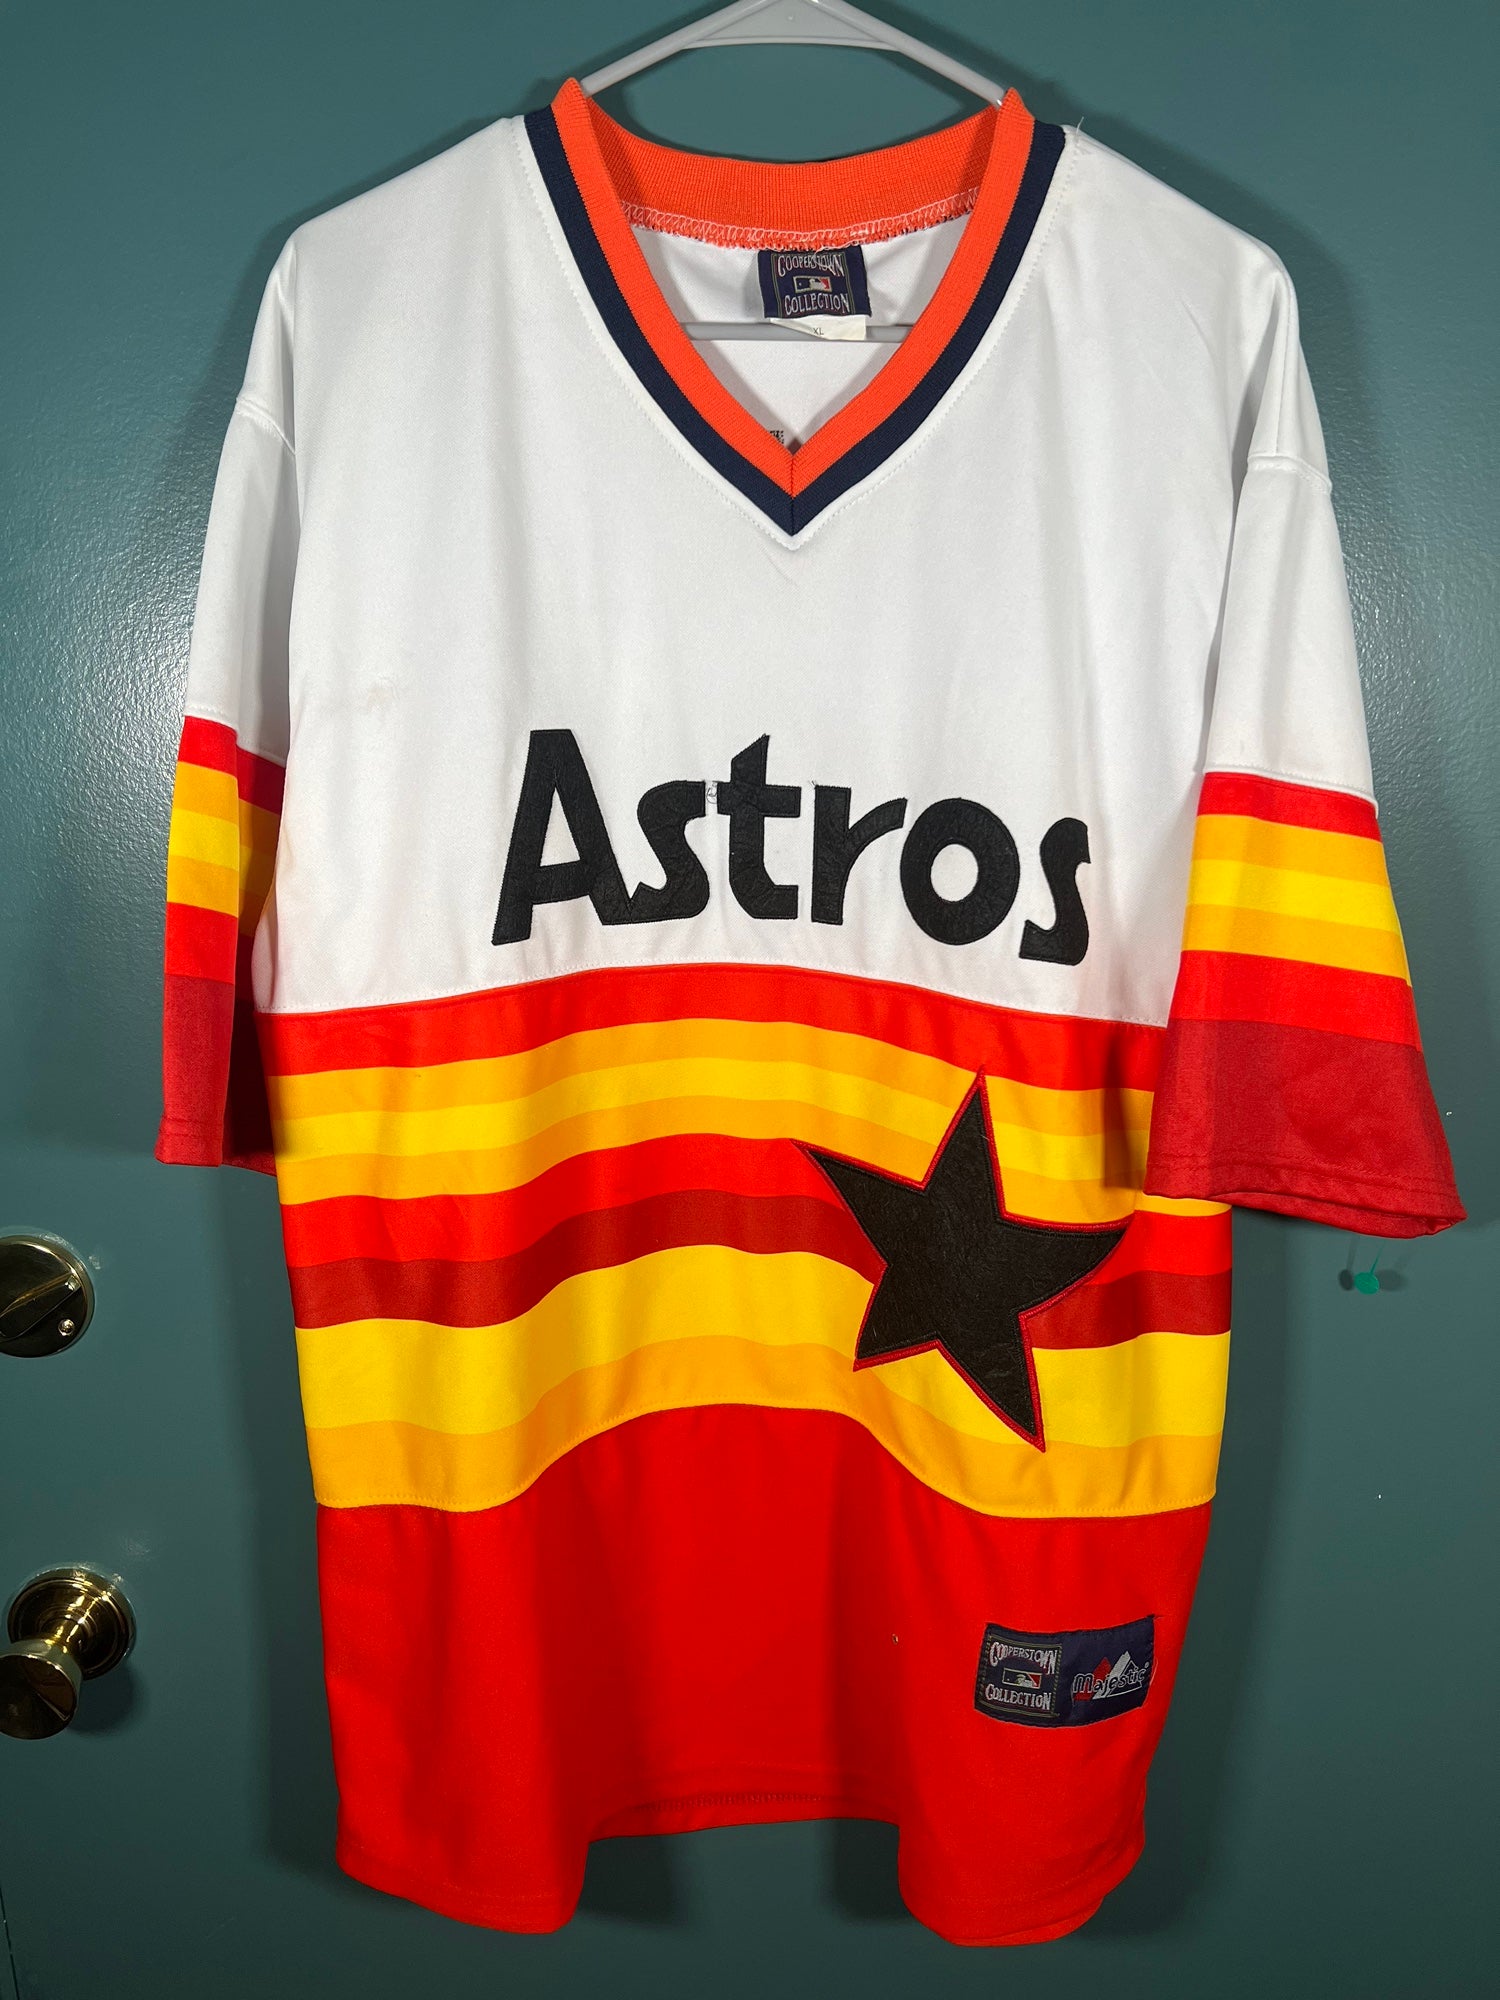 astros vintage uniform